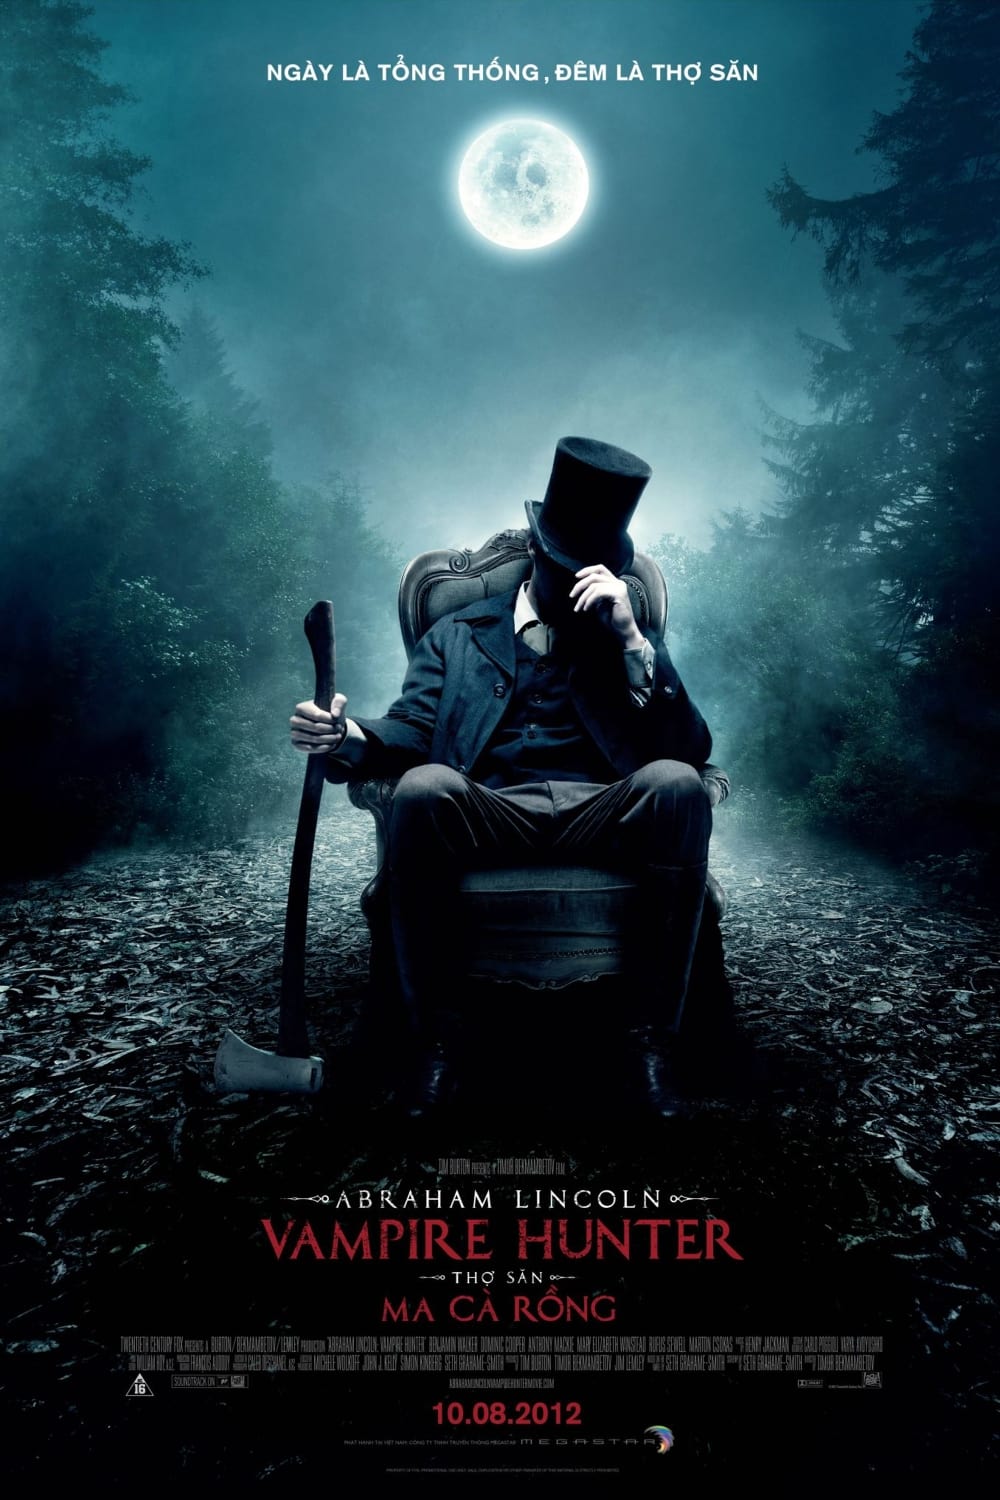 Banner Phim Thợ Săn Ma Cà Rồng (Abraham Lincoln: Vampire Hunter)